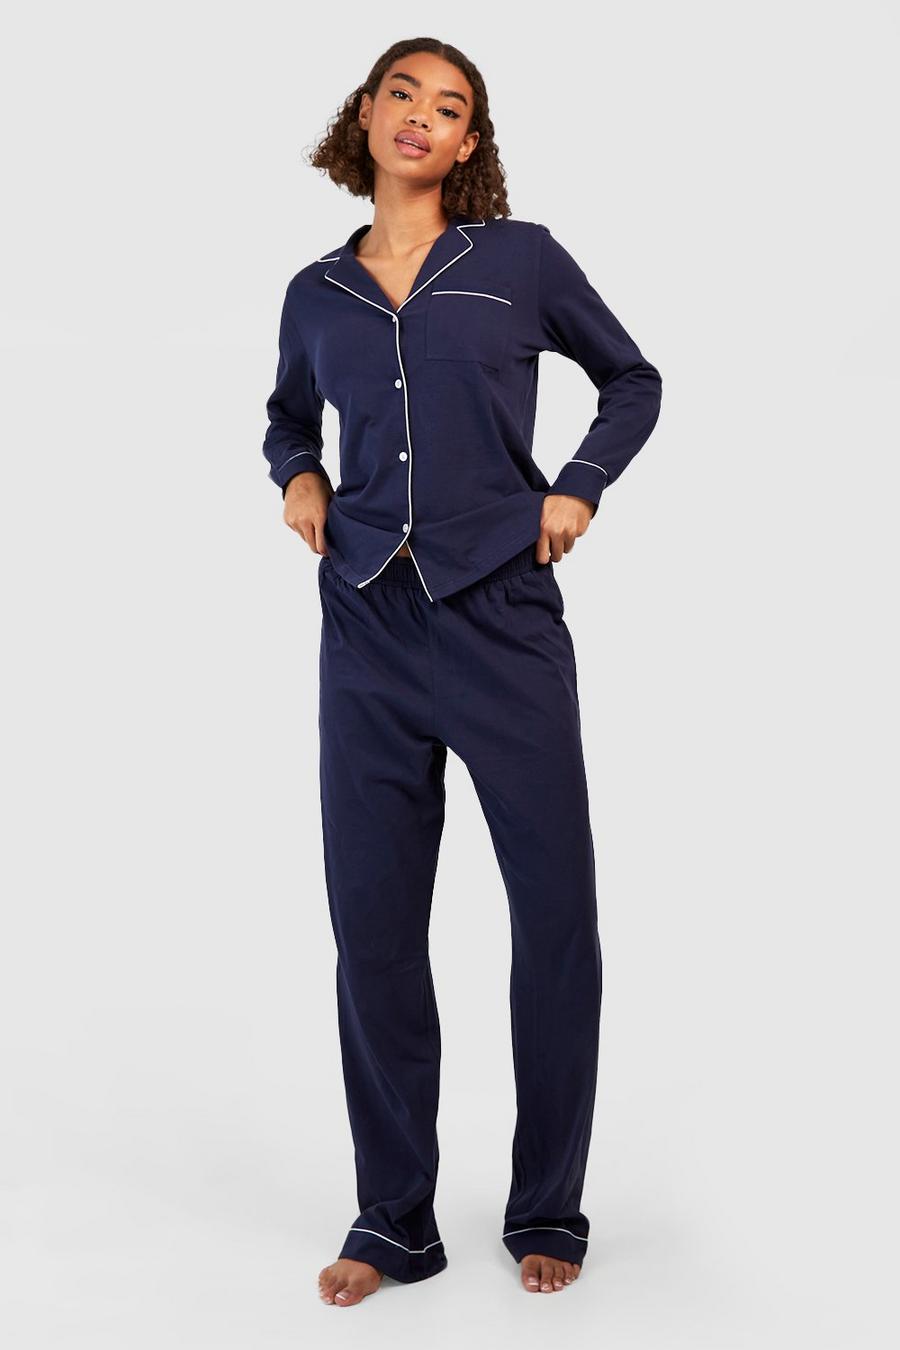 Women's Tall Pajamas, Women's Tall Pajama Pants